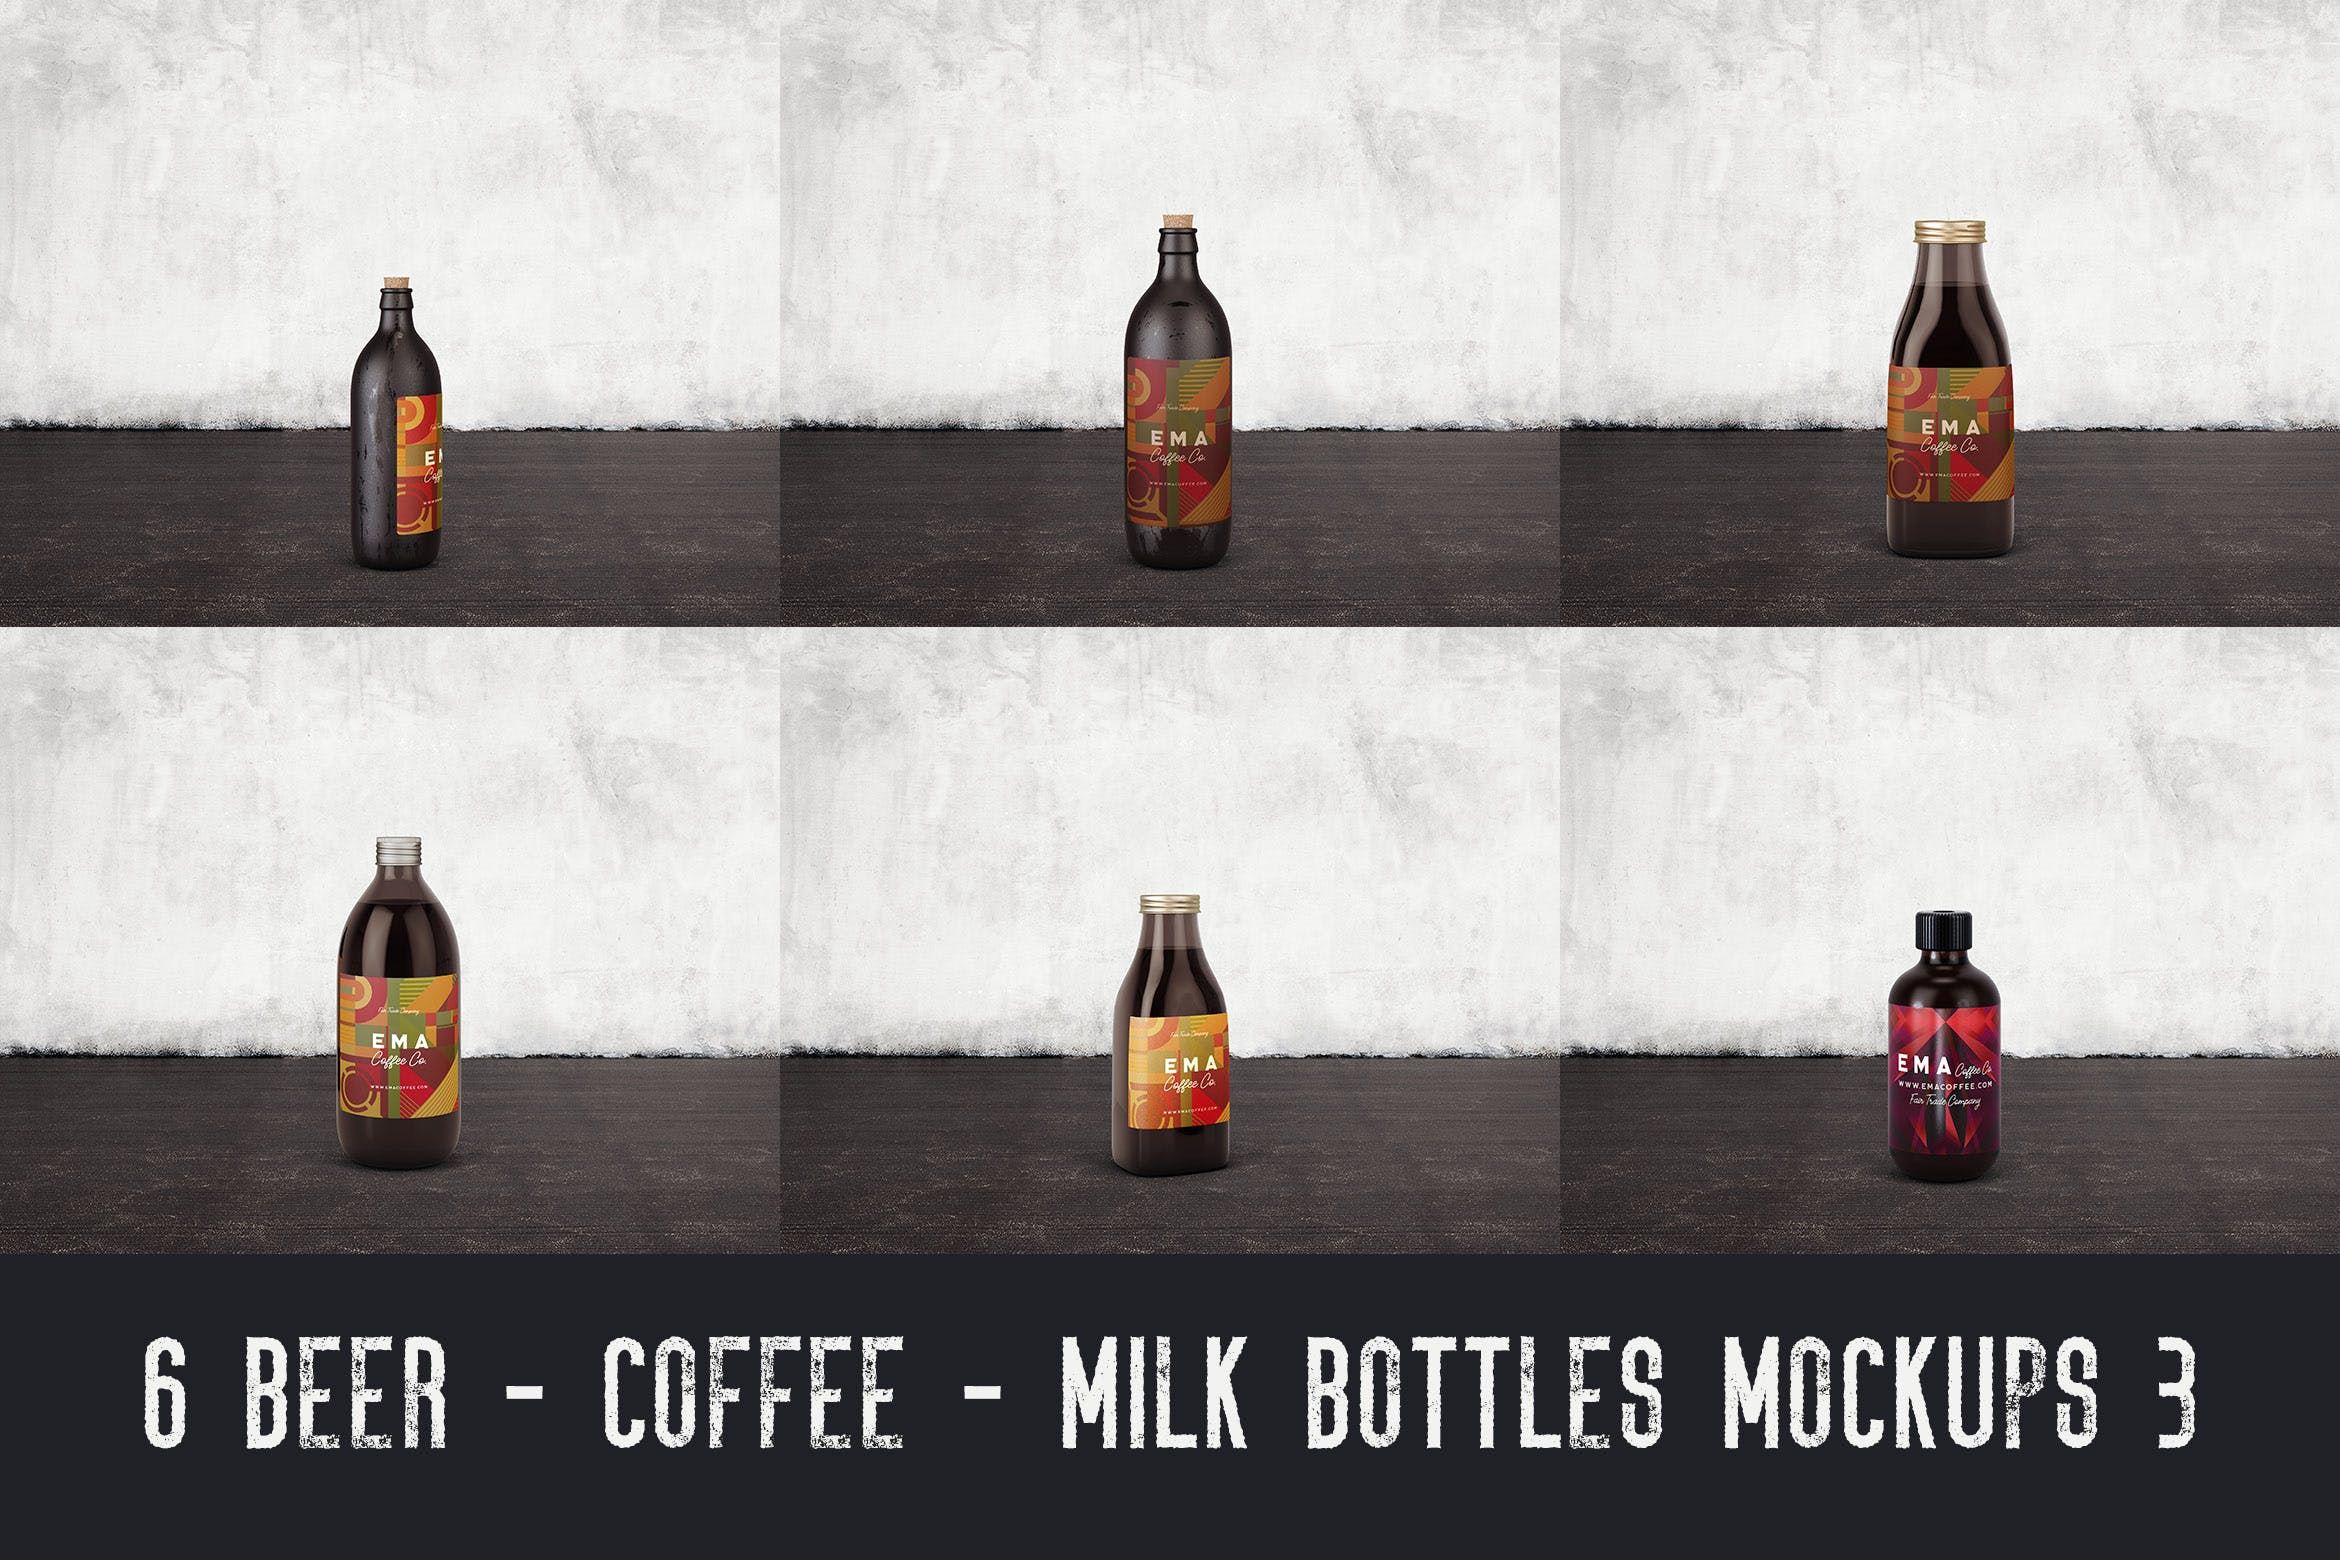 6个啤酒/咖啡/牛奶瓶外观设计16图库精选v3 6 Beer Coffee Milk Bottles Mockups 3插图